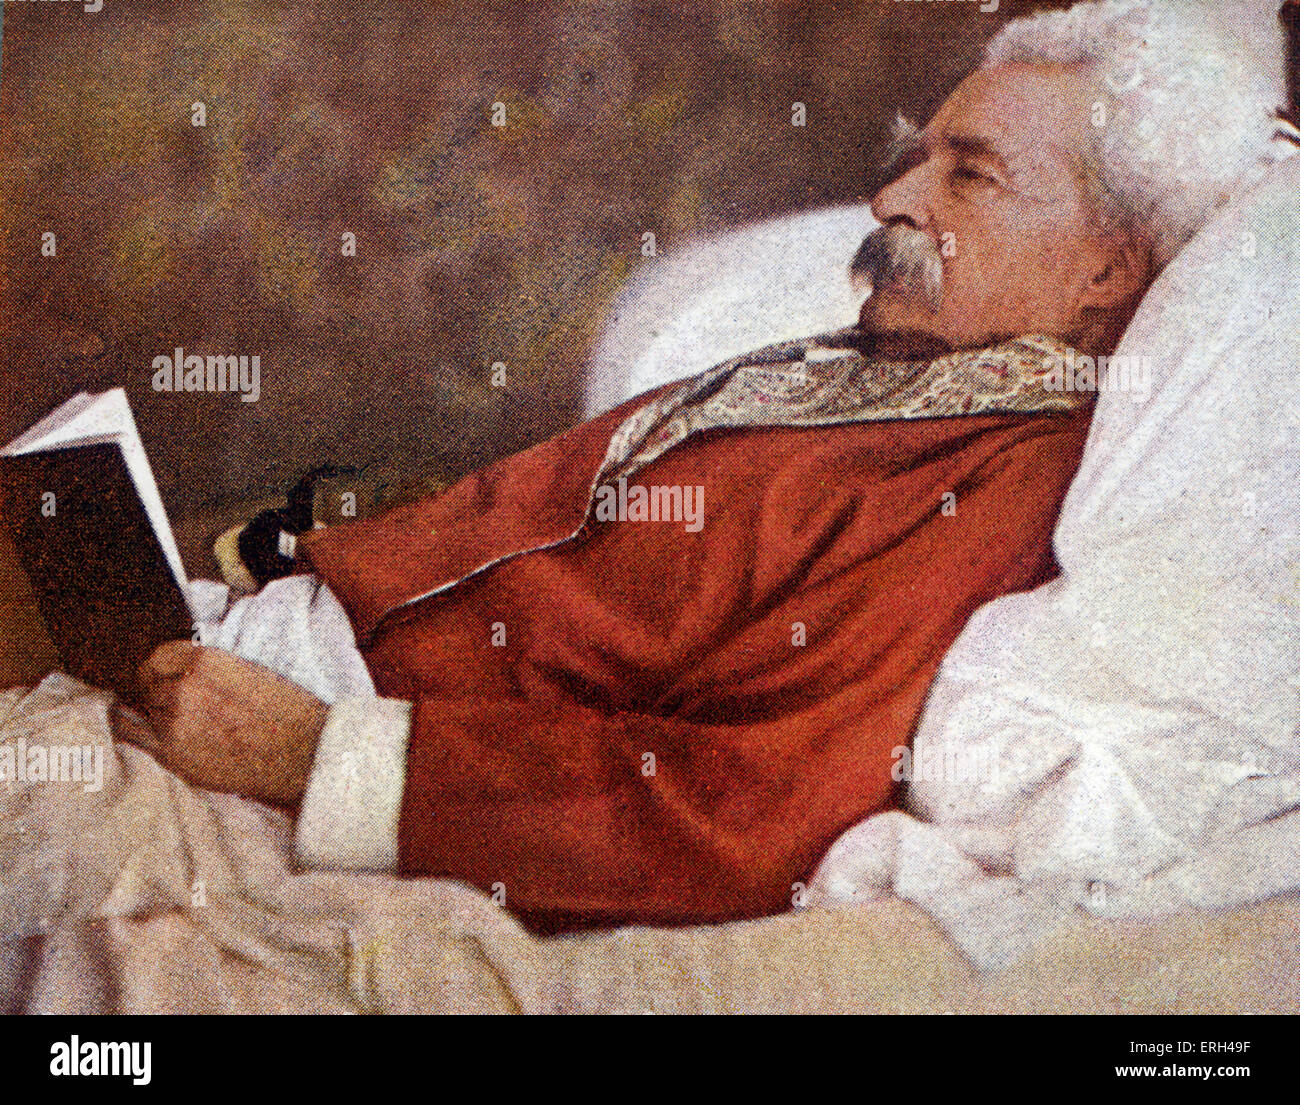 Mark Twain lesen im Bett. Mark Twain (Pseudonym für Samuel Langhorne Clemens) - amerikanischer Schriftsteller, Satiriker, Dozent, 30 Stockfoto